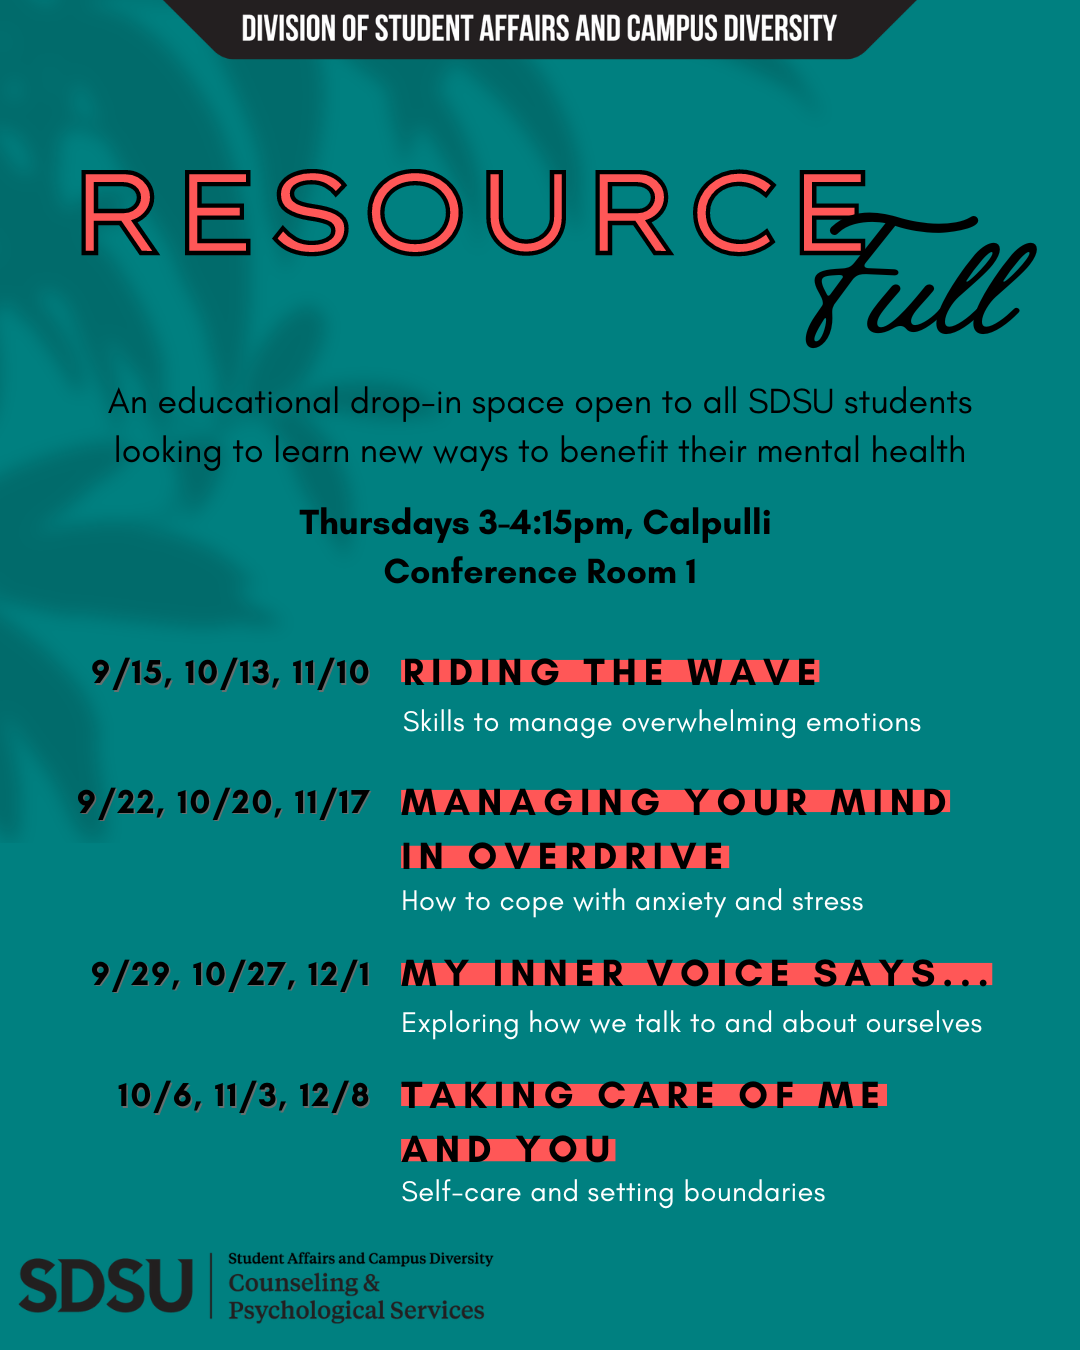 ResourceFull flyer